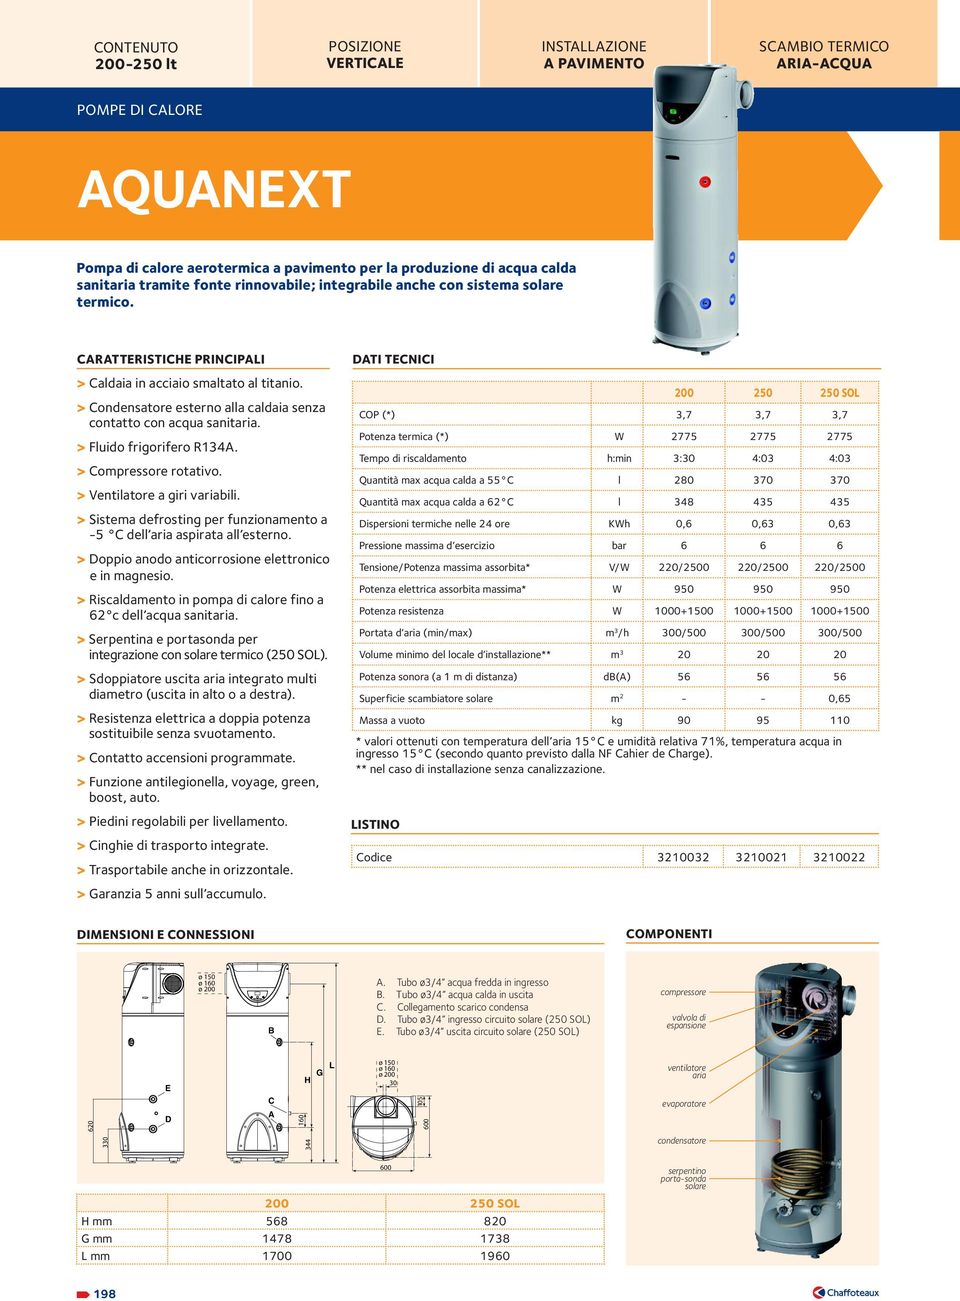 > Condensatore esterno alla caldaia senza contatto con acqua sanitaria. > Fluido frigorifero R34A. > Compressore rotativo. > Ventilatore a giri variabili.